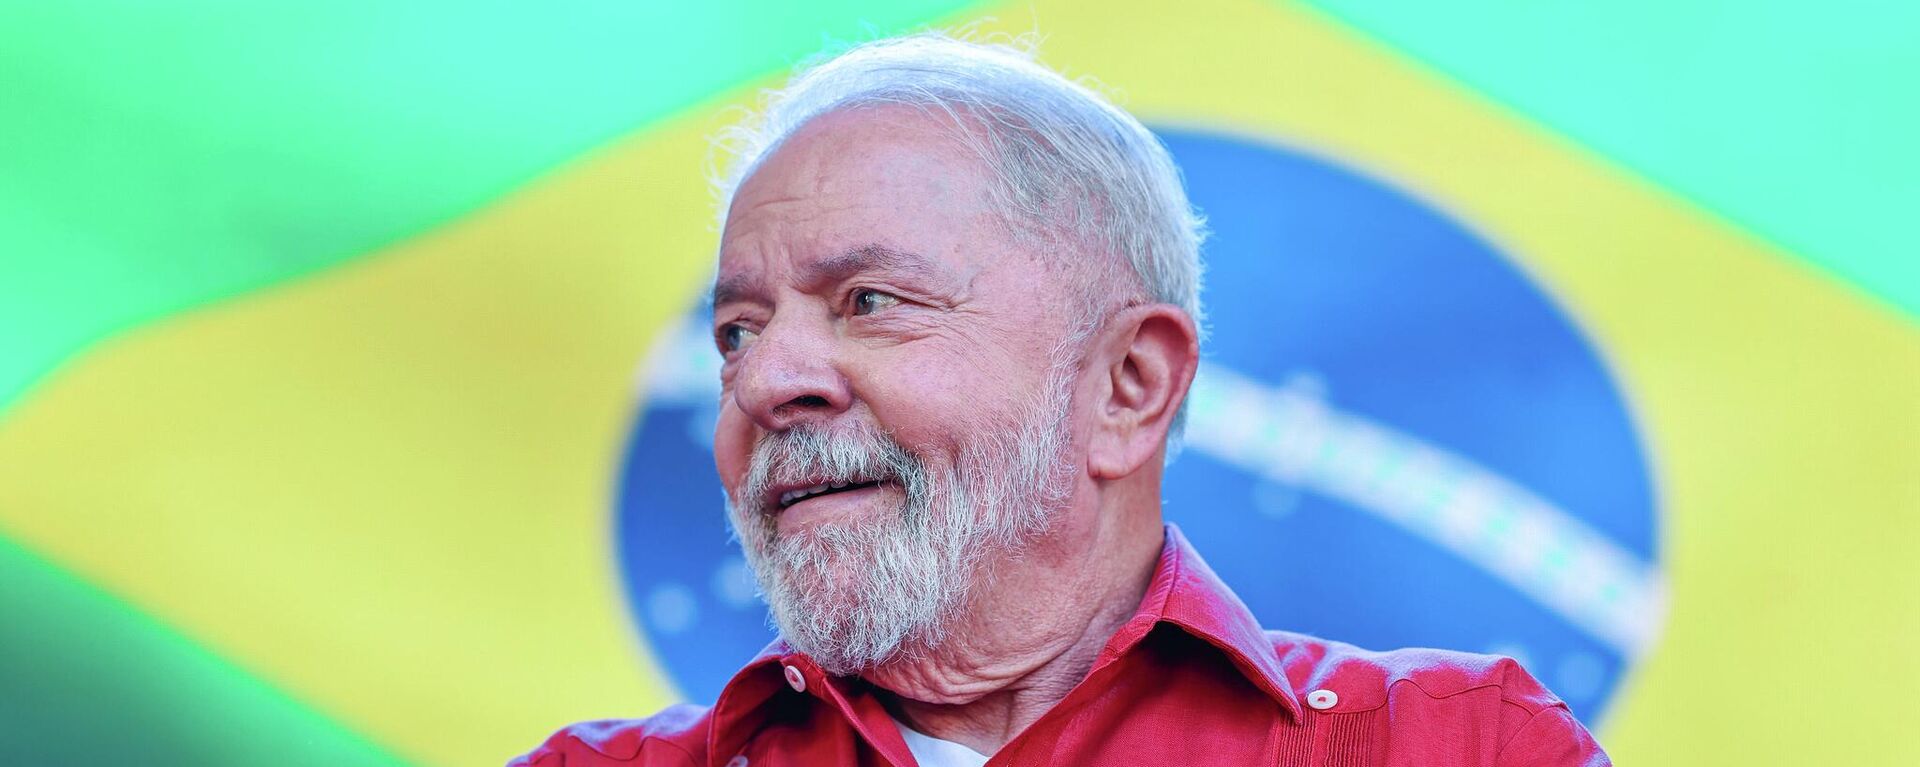 O ex-presidente Luiz Inácio Lula da Silva (PT) durante ato de campanha em Diadema (SP) - Sputnik Brasil, 1920, 27.07.2022